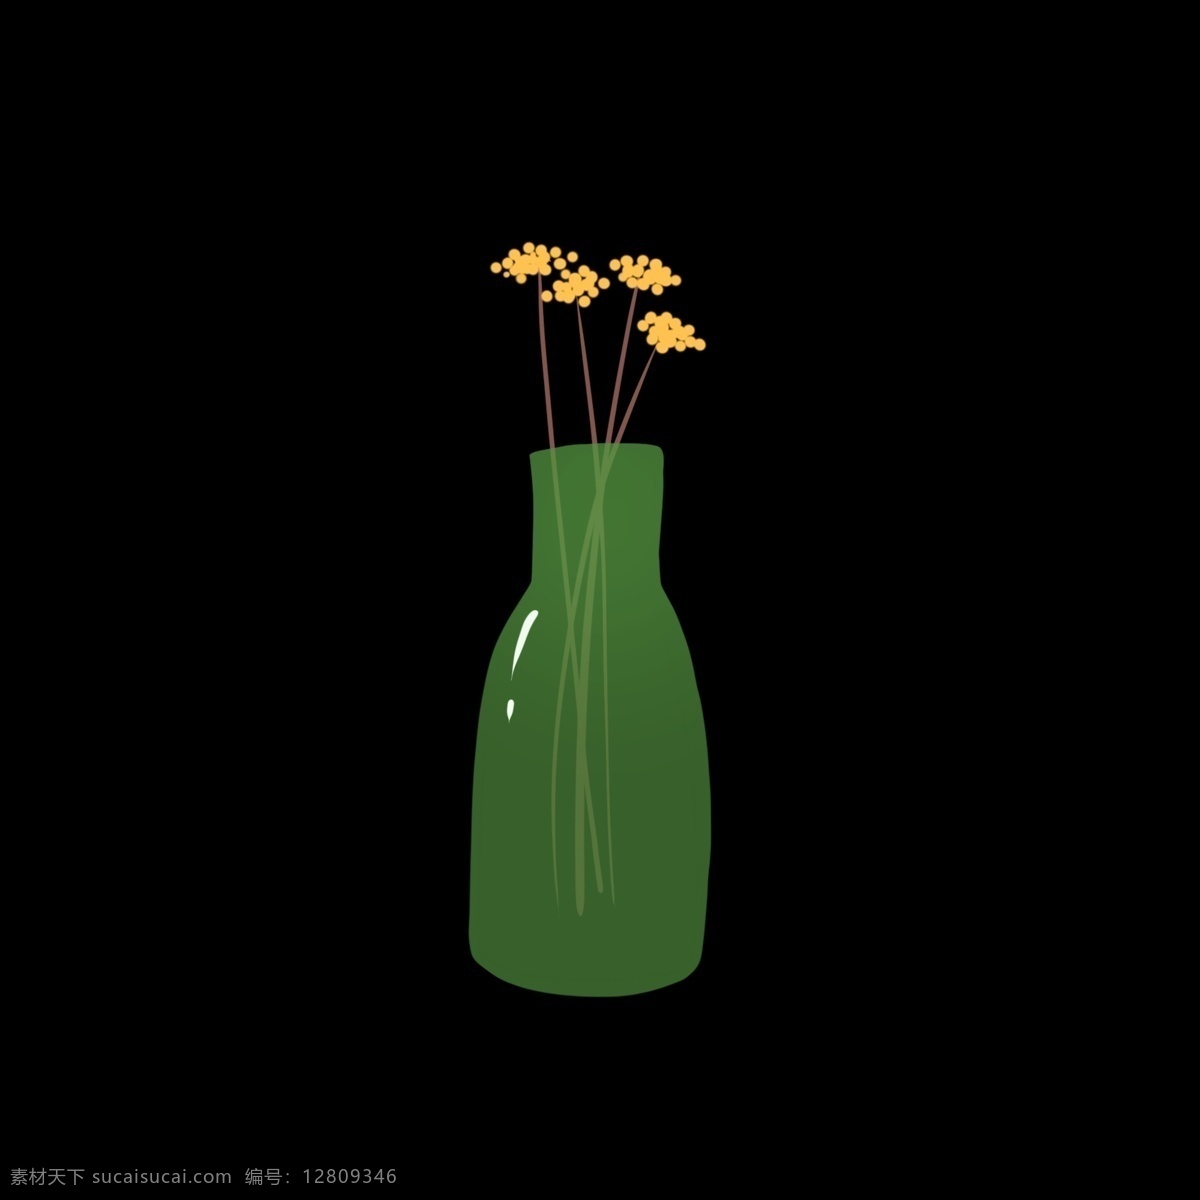 鲜花 花瓶 绿色 玻璃瓶 可爱 免抠